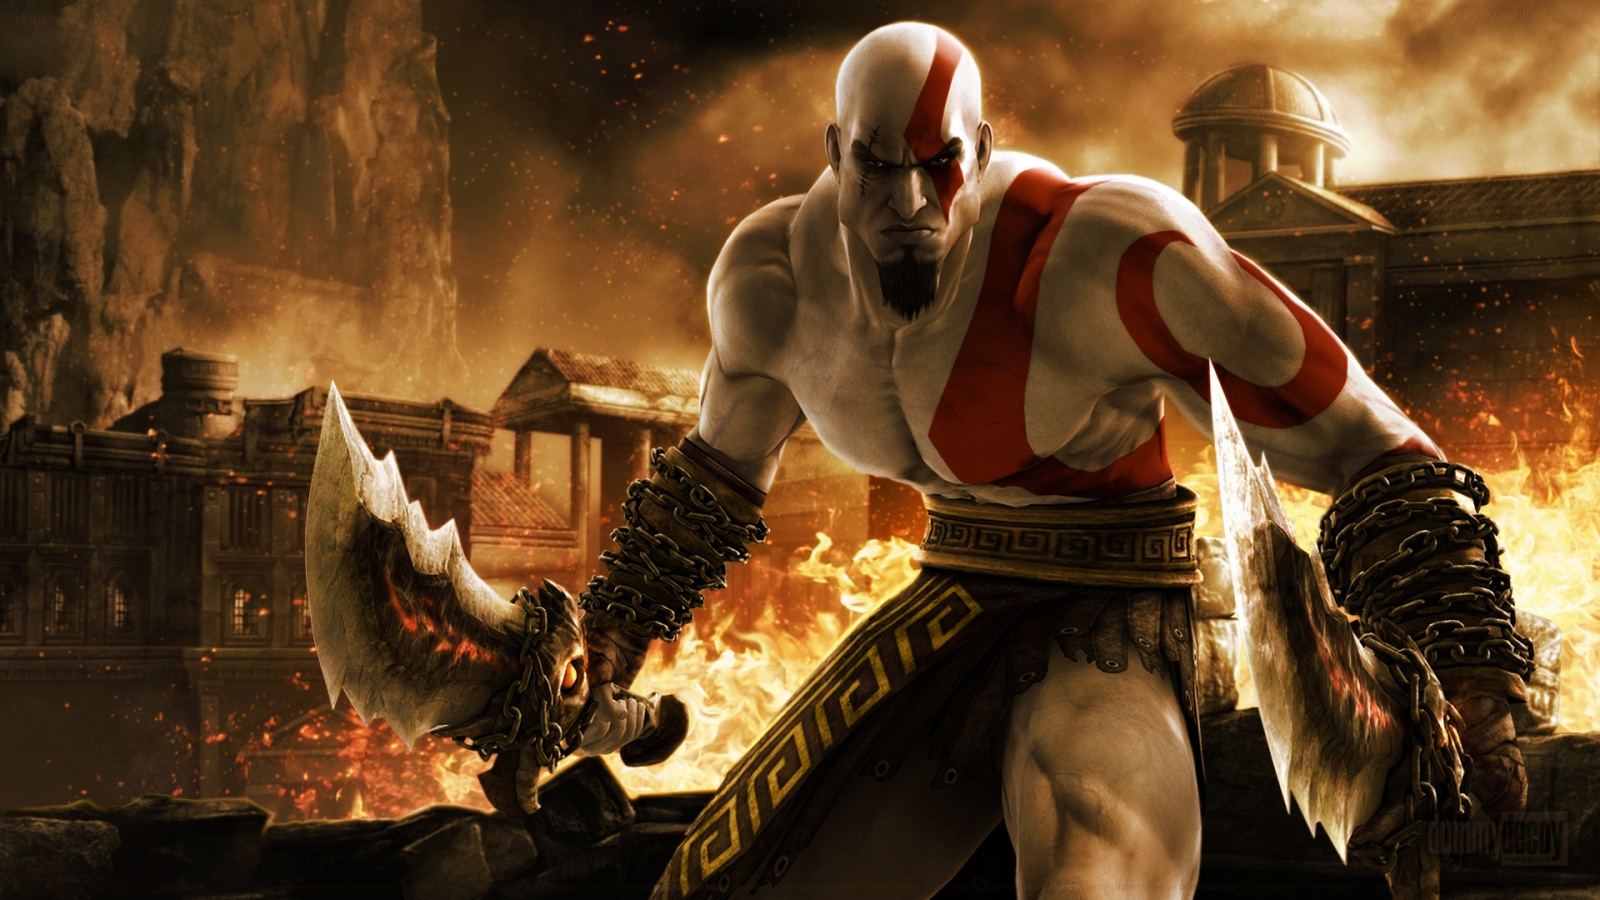 kratos (god of war), god of war, video game Image for desktop